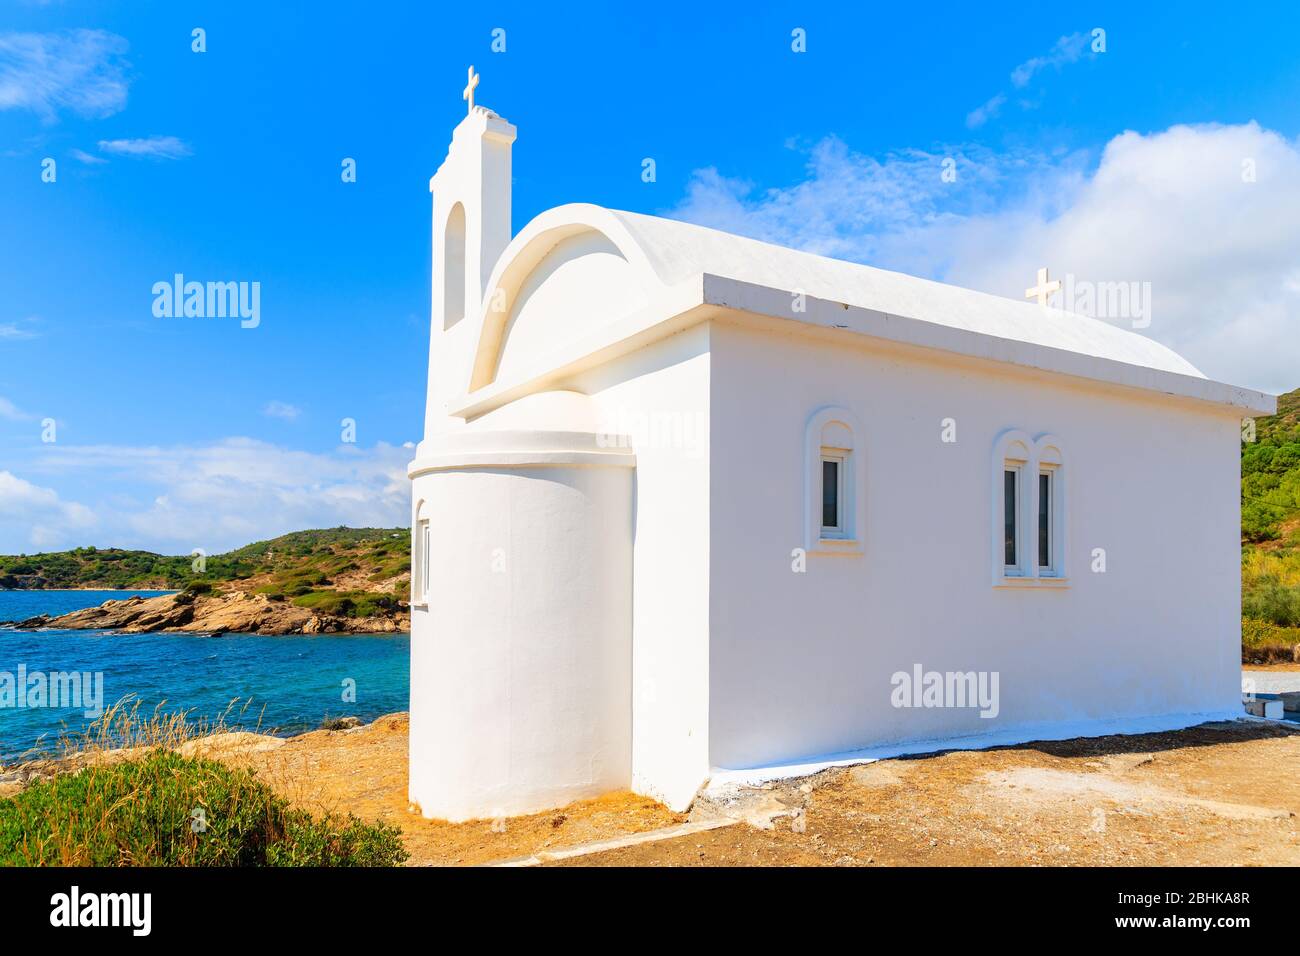 Iglesia griega blanca en la playa, isla de Samos, Mar Egeo, Grecia Foto de stock